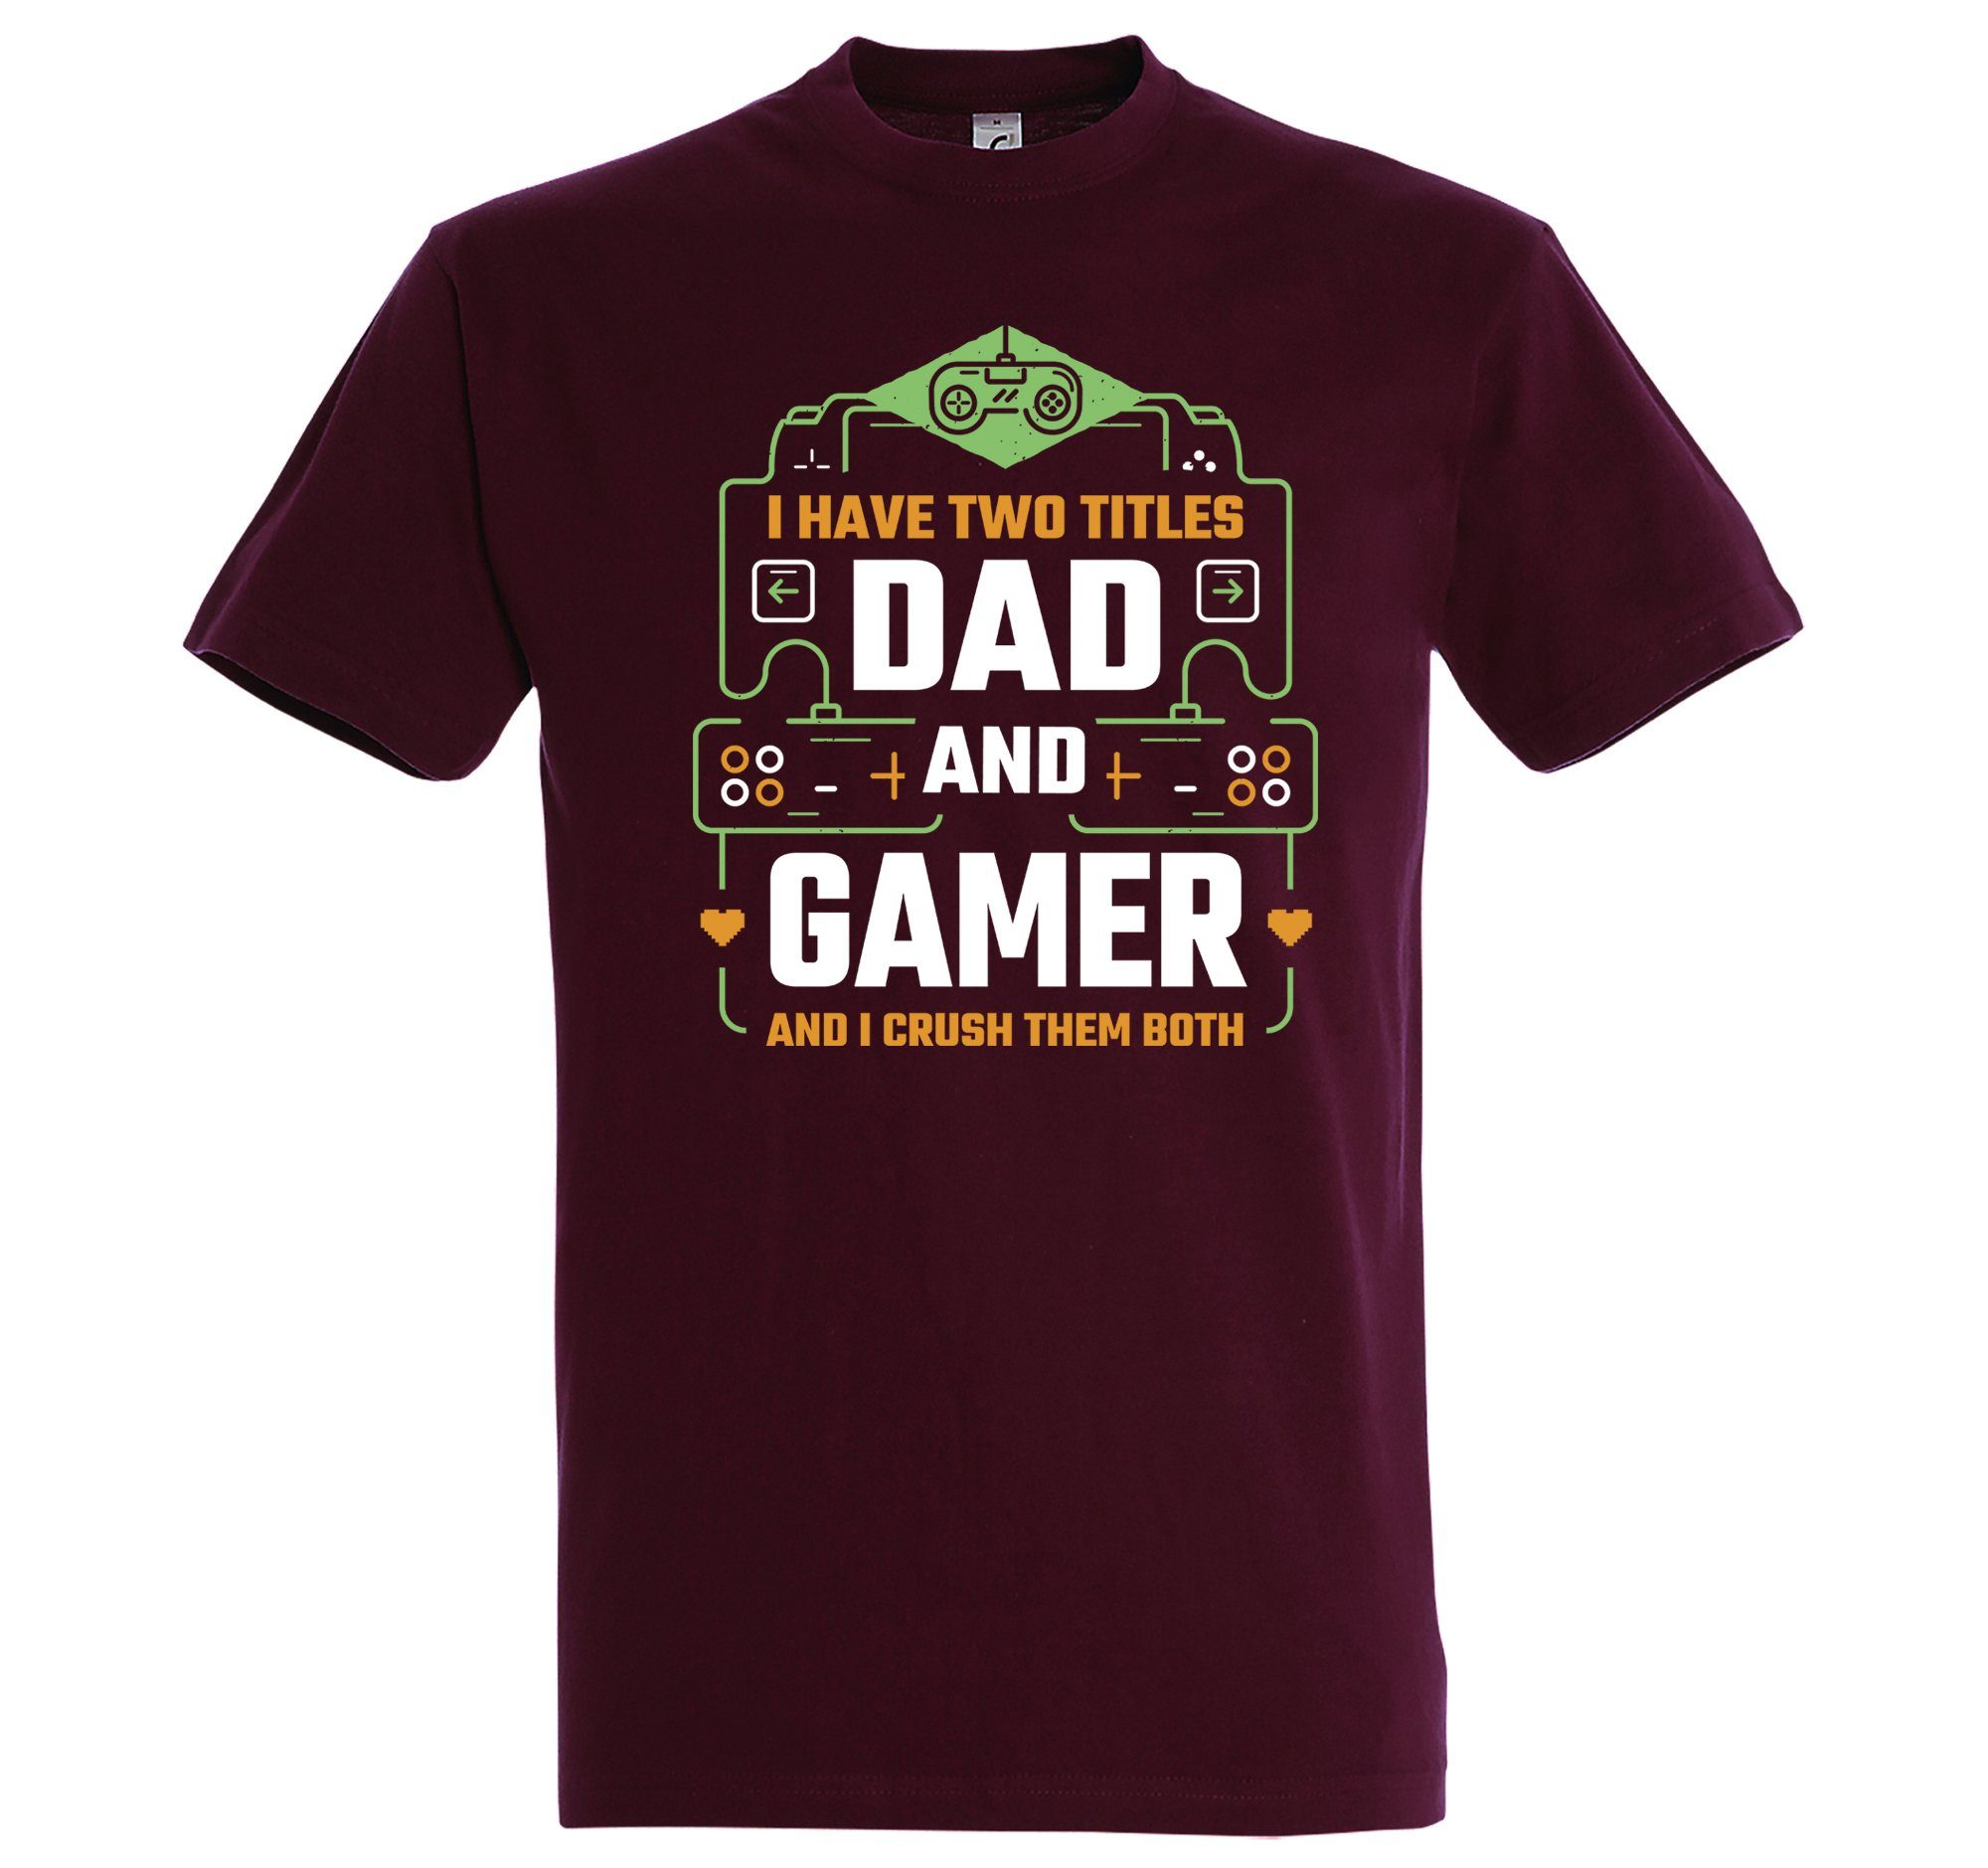 Designz T-Shirt "Dad Gamer" Burgund Frontprint mit Herren Shirt Youth And trendigem